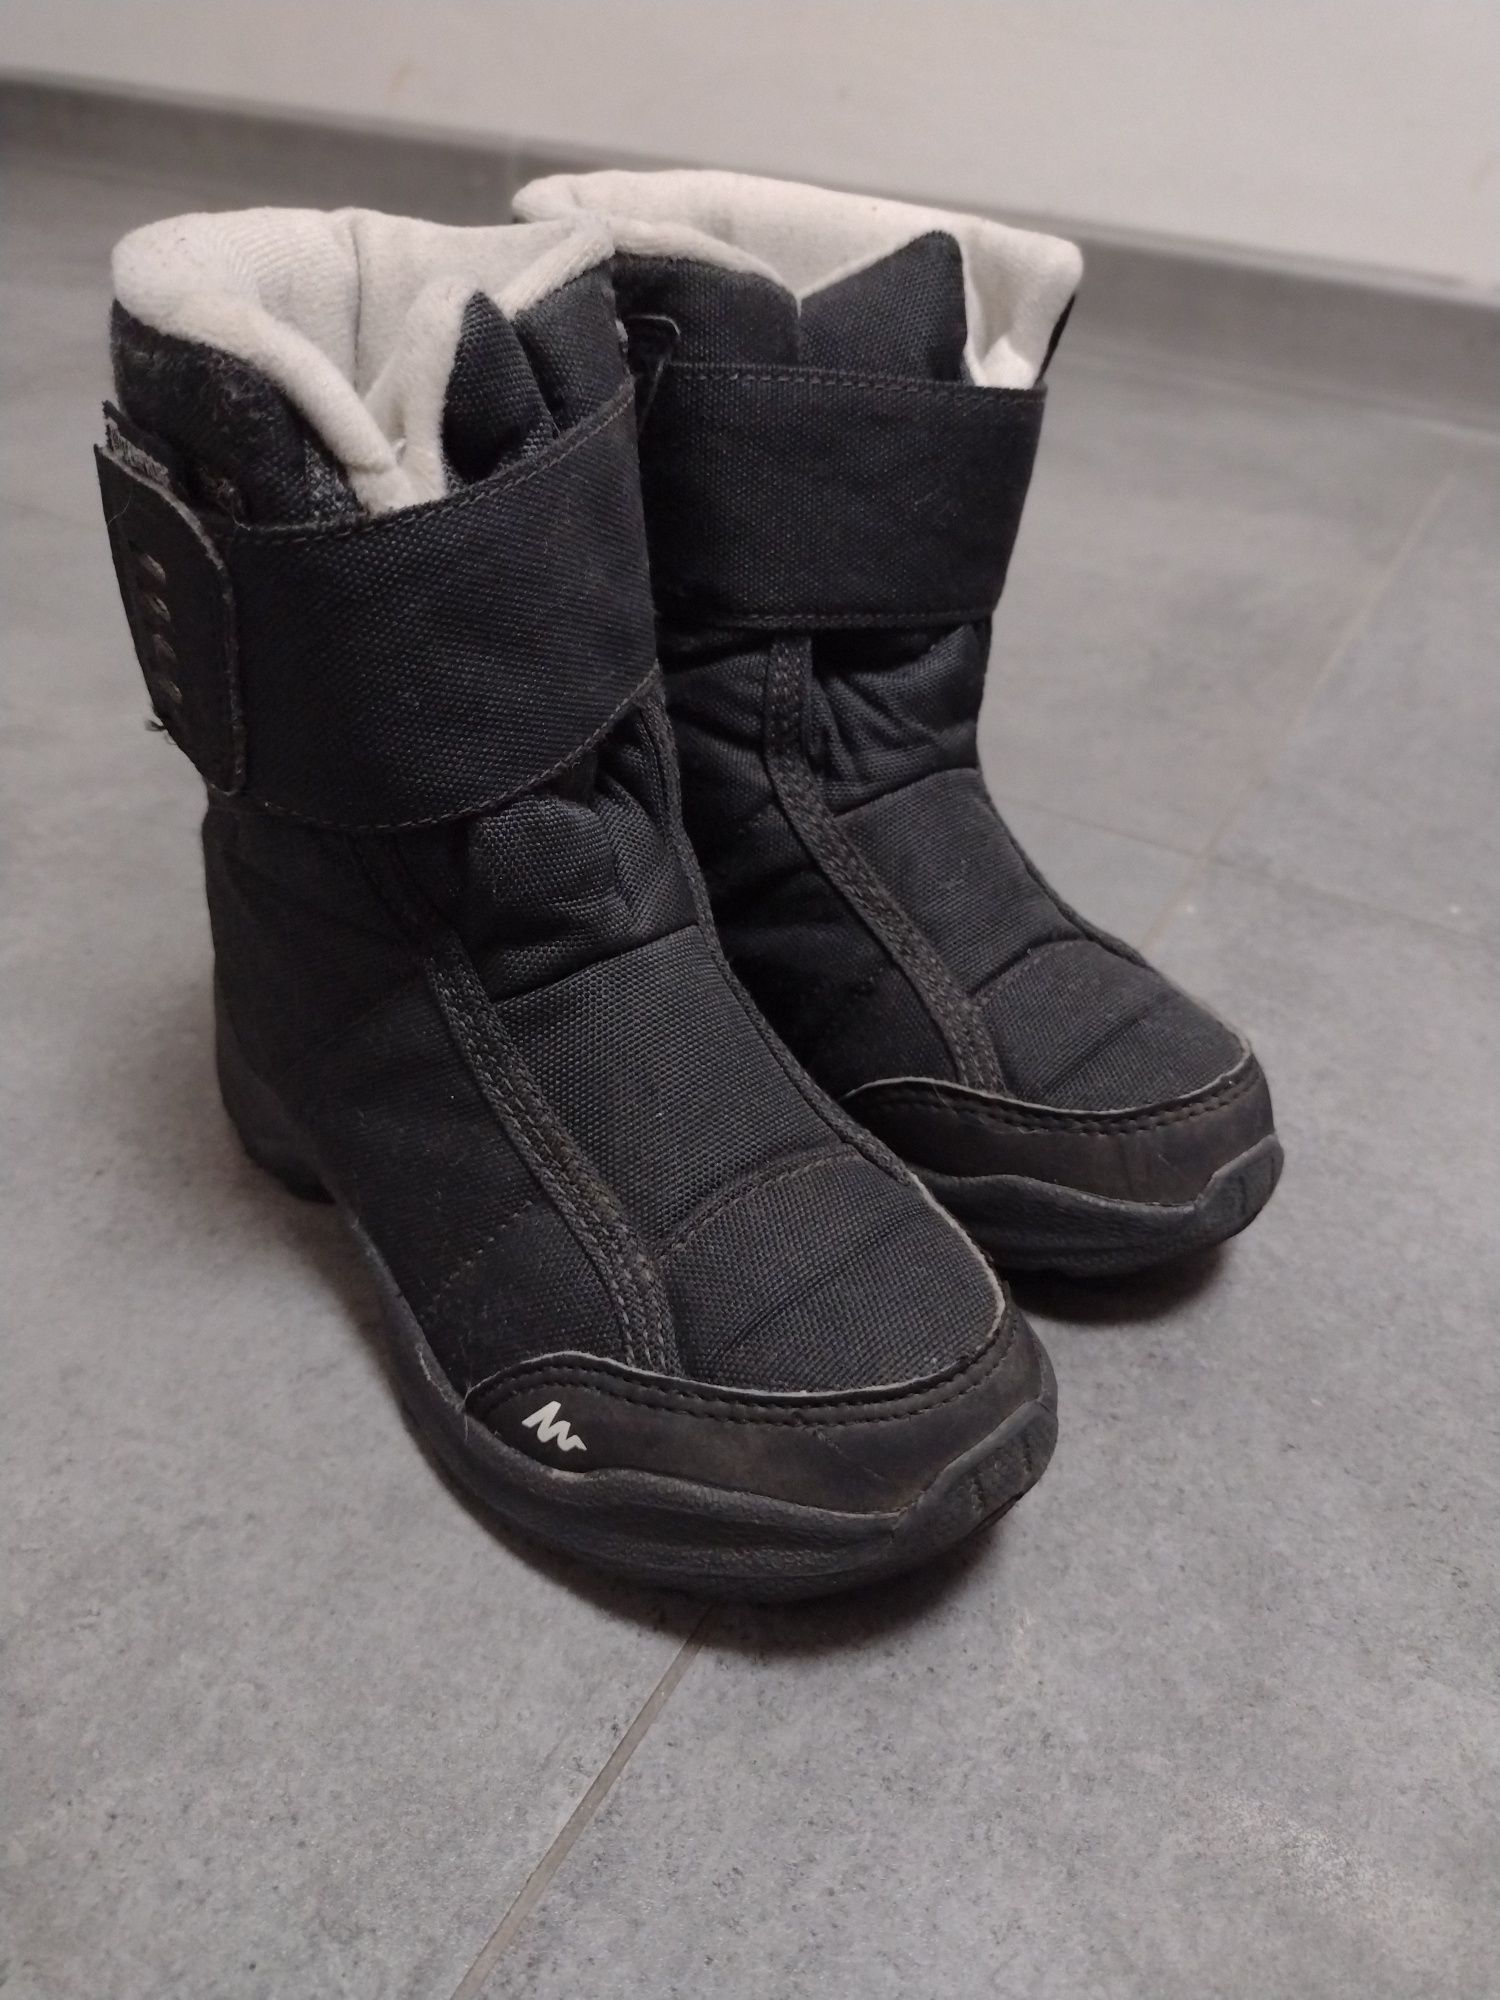 Zimowe buty Marters Quechua 28, wkładka 17,6 cm dla chłopca i dla dzie